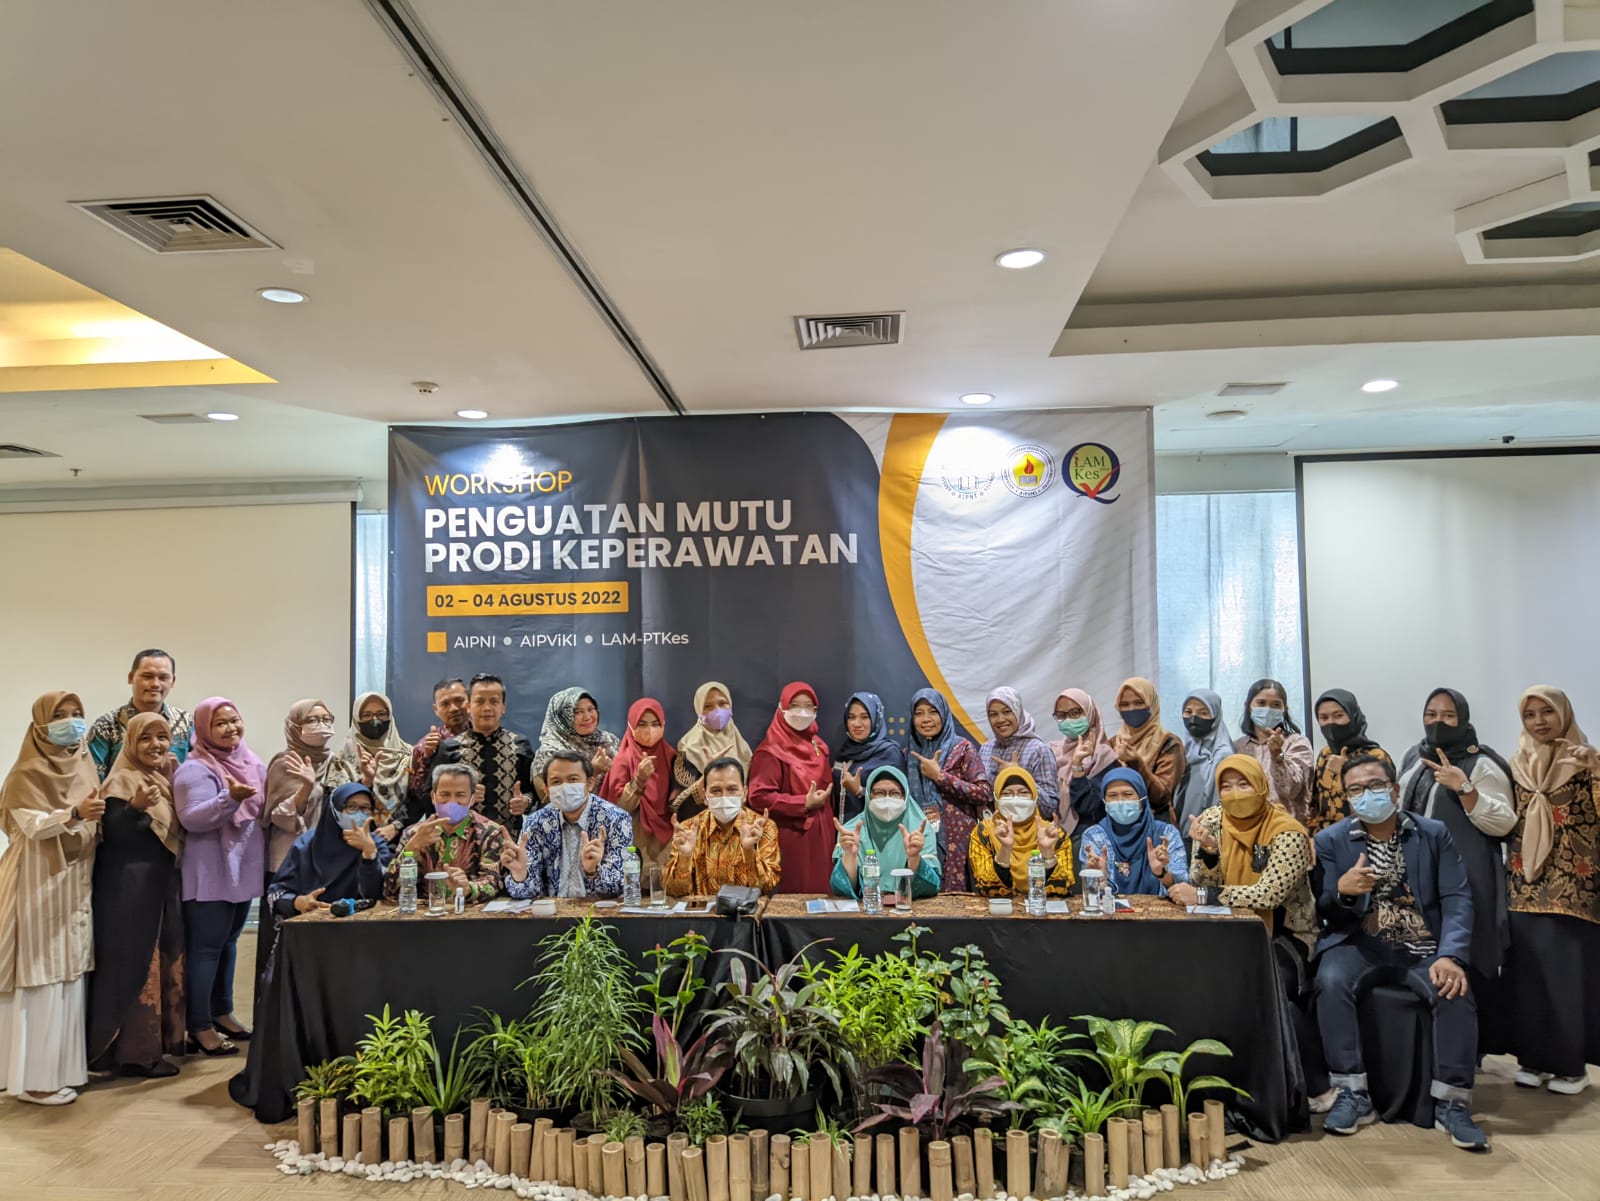 STIKes Mitra Husada Medan mengikuti Kegiatan Workshop Penguatan Mutu Prodi Keperawatan yang dilaksanakan oleh AIPNI, AIVIKI Dan LAM-PTKes